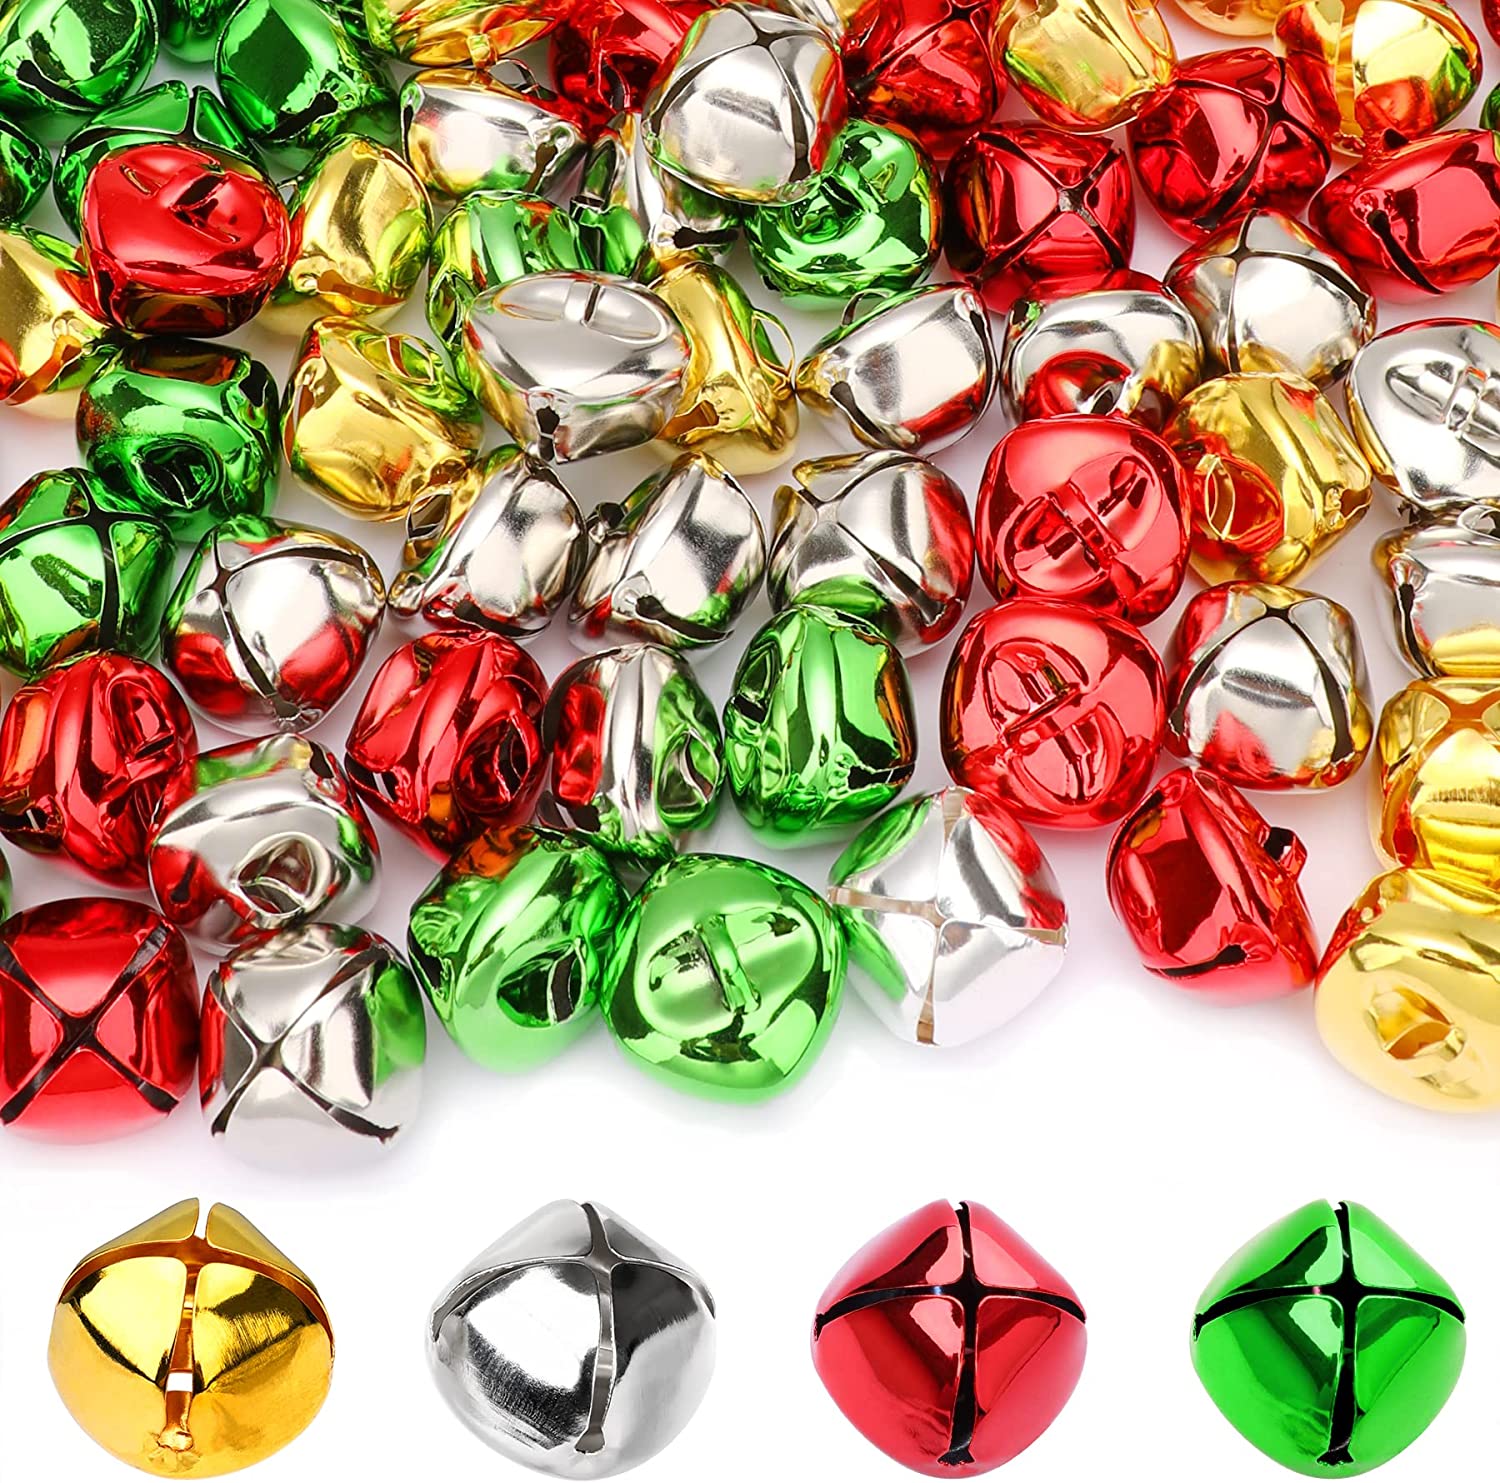  Mr. Pen- Jingle Bells, 1 Inch, Silver, 50 Pack, Bells